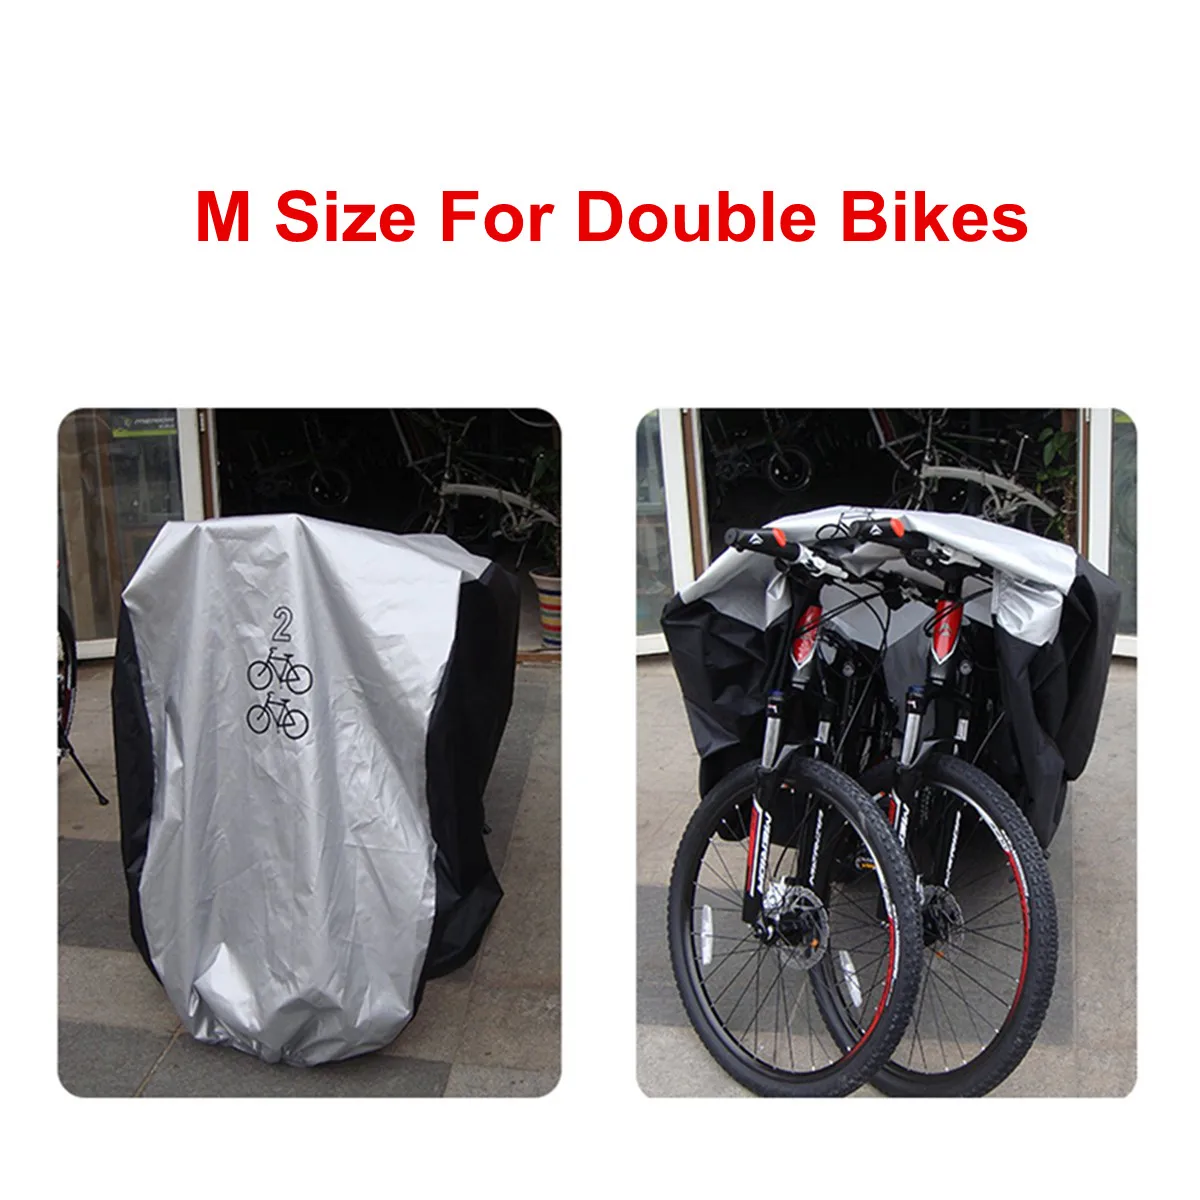 3 размера Универсальный водонепроницаемый велосипед Защитное снаряжение велосипед Велоспорт Мотоцикл покрывает УФ протектор детали для навеса